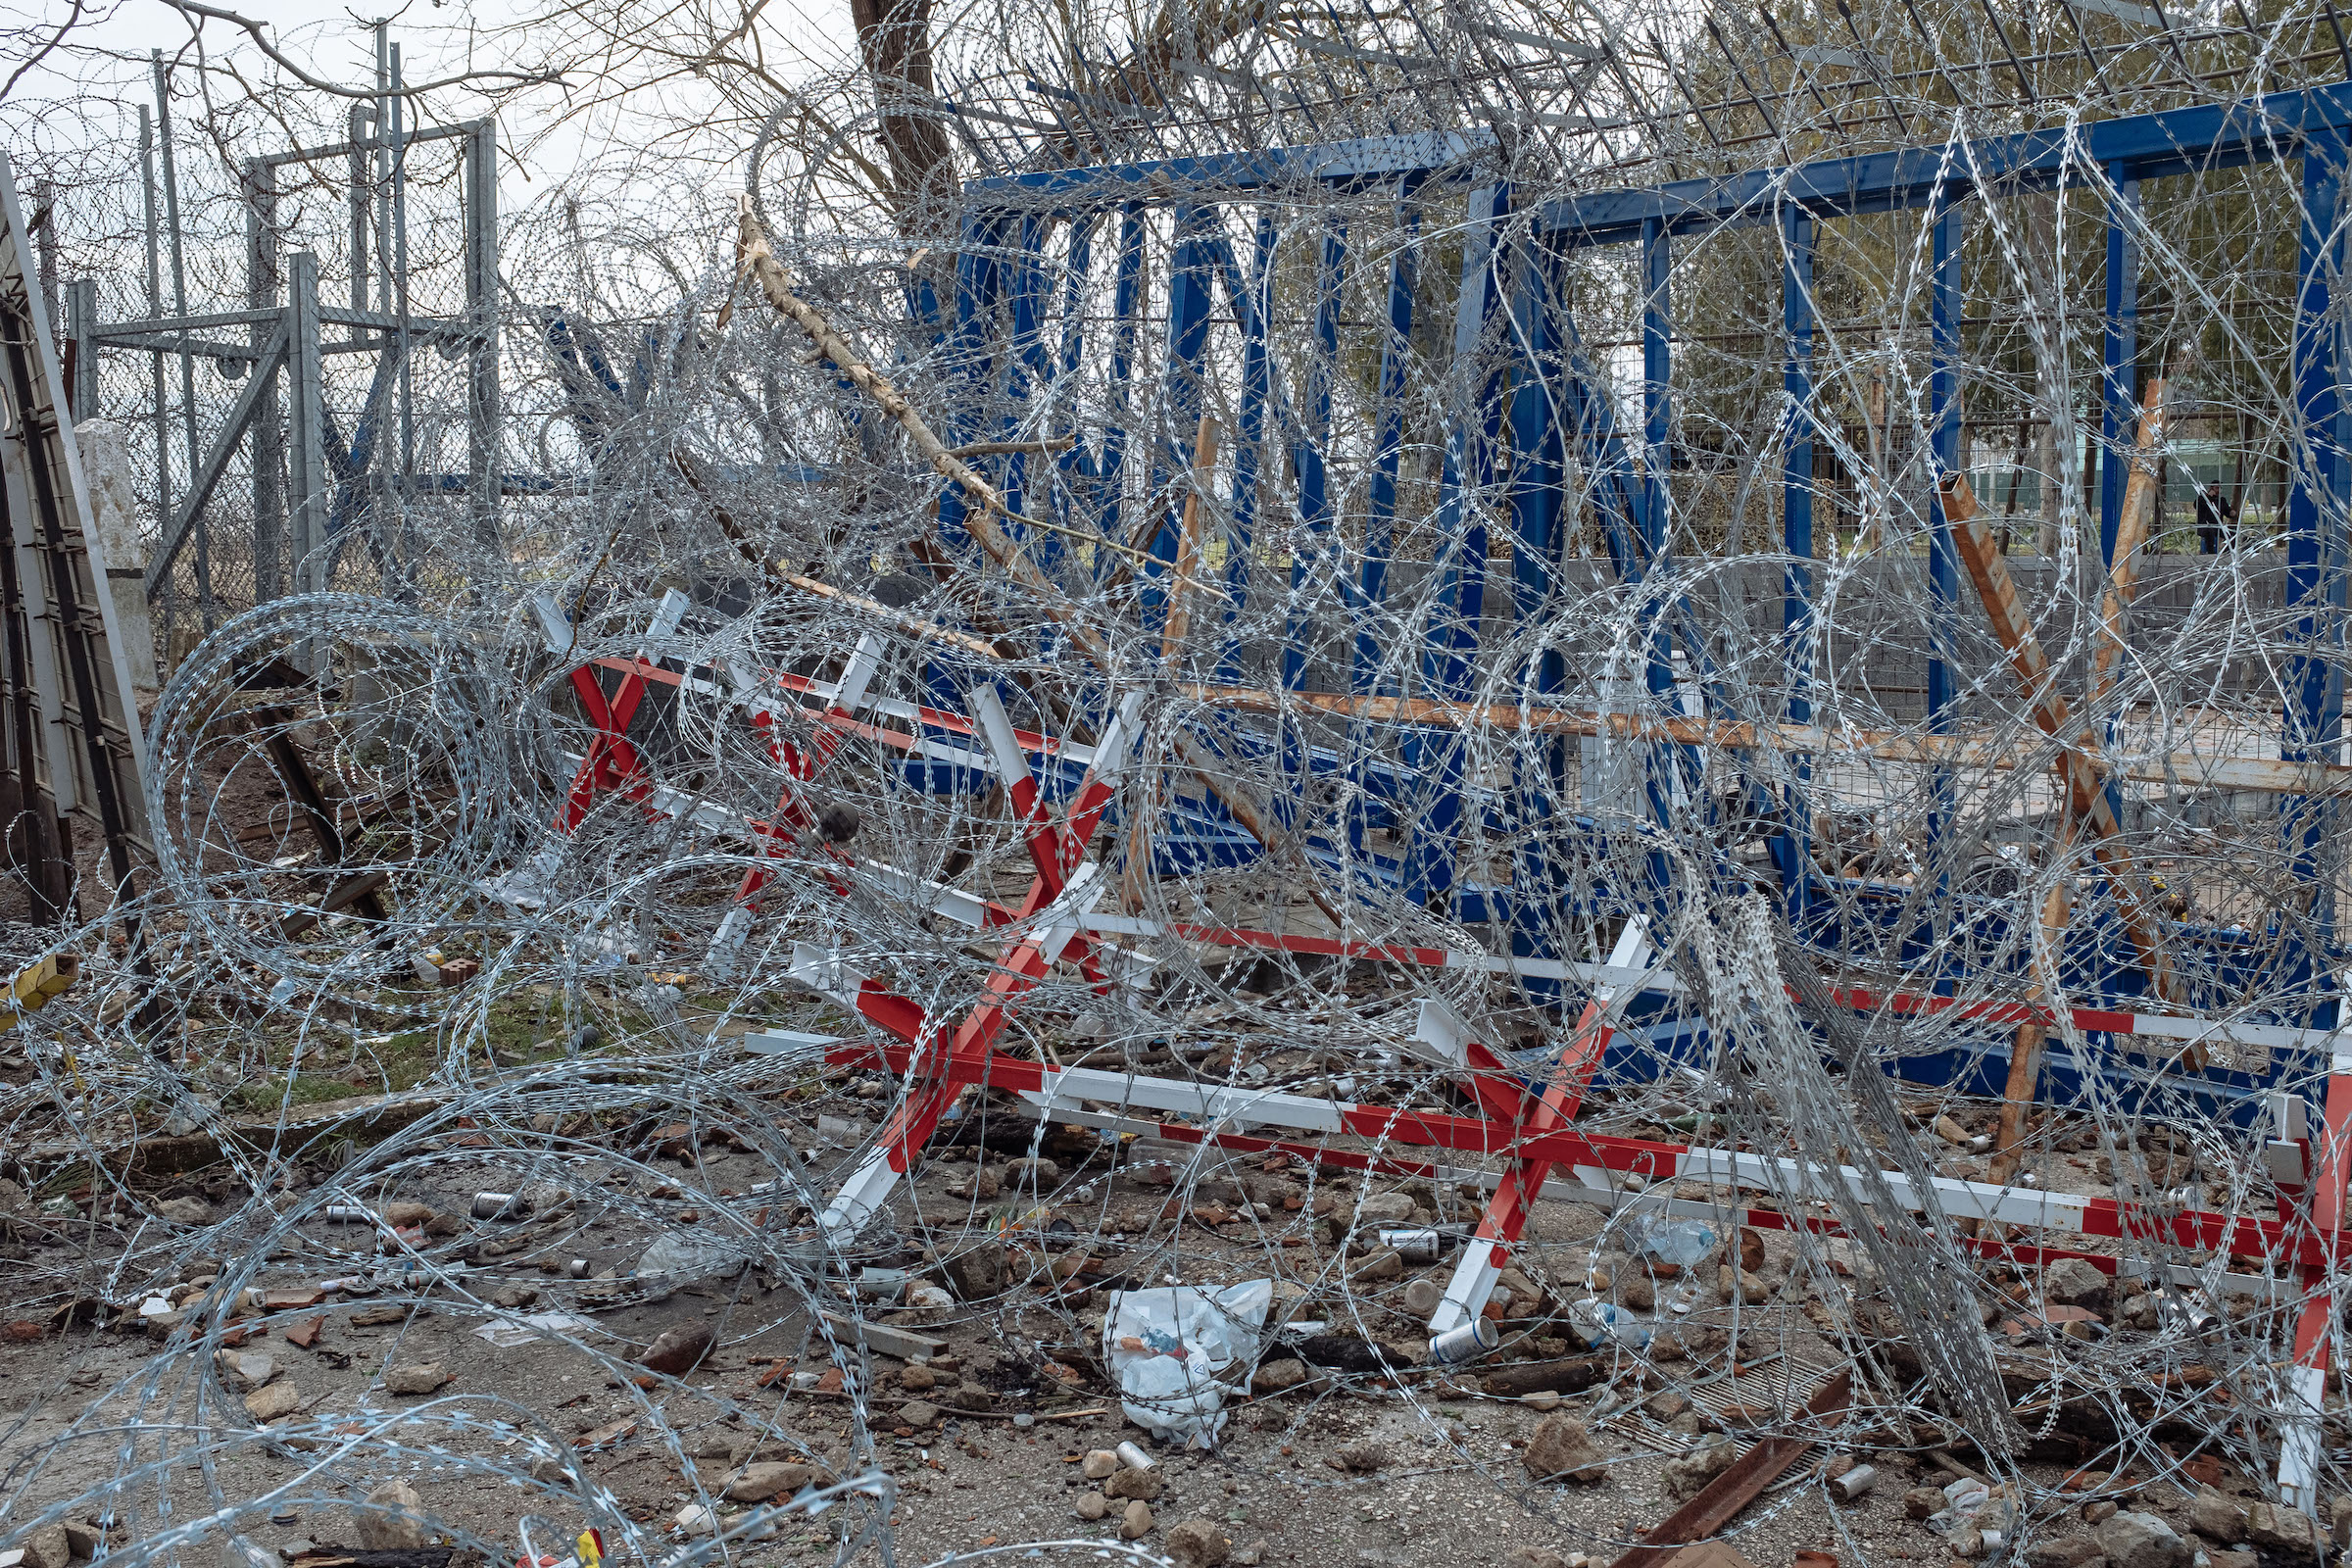 Razor wire at the border crossing.